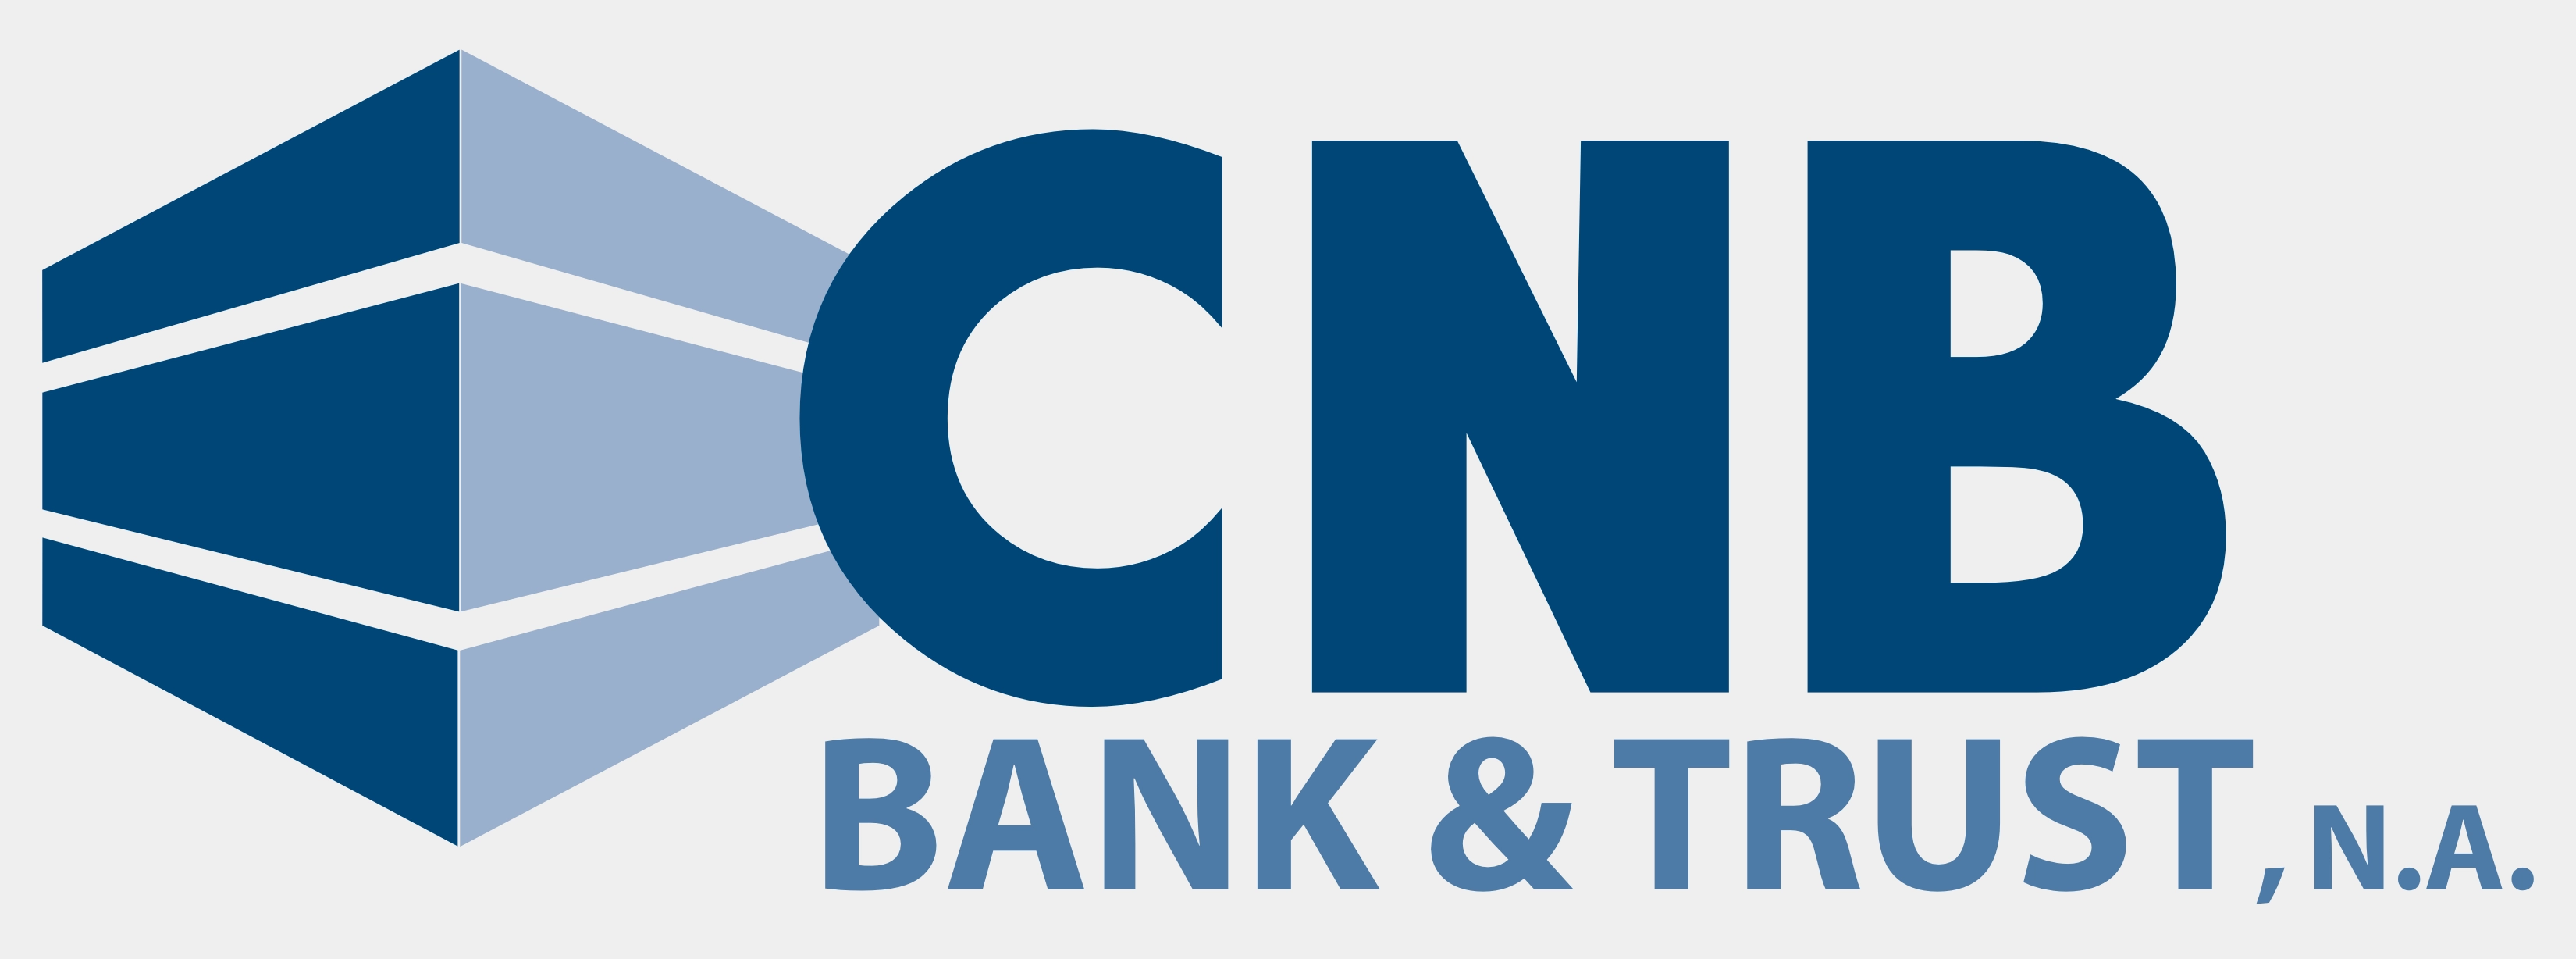 CNB Bank & Trust, N.A. logo